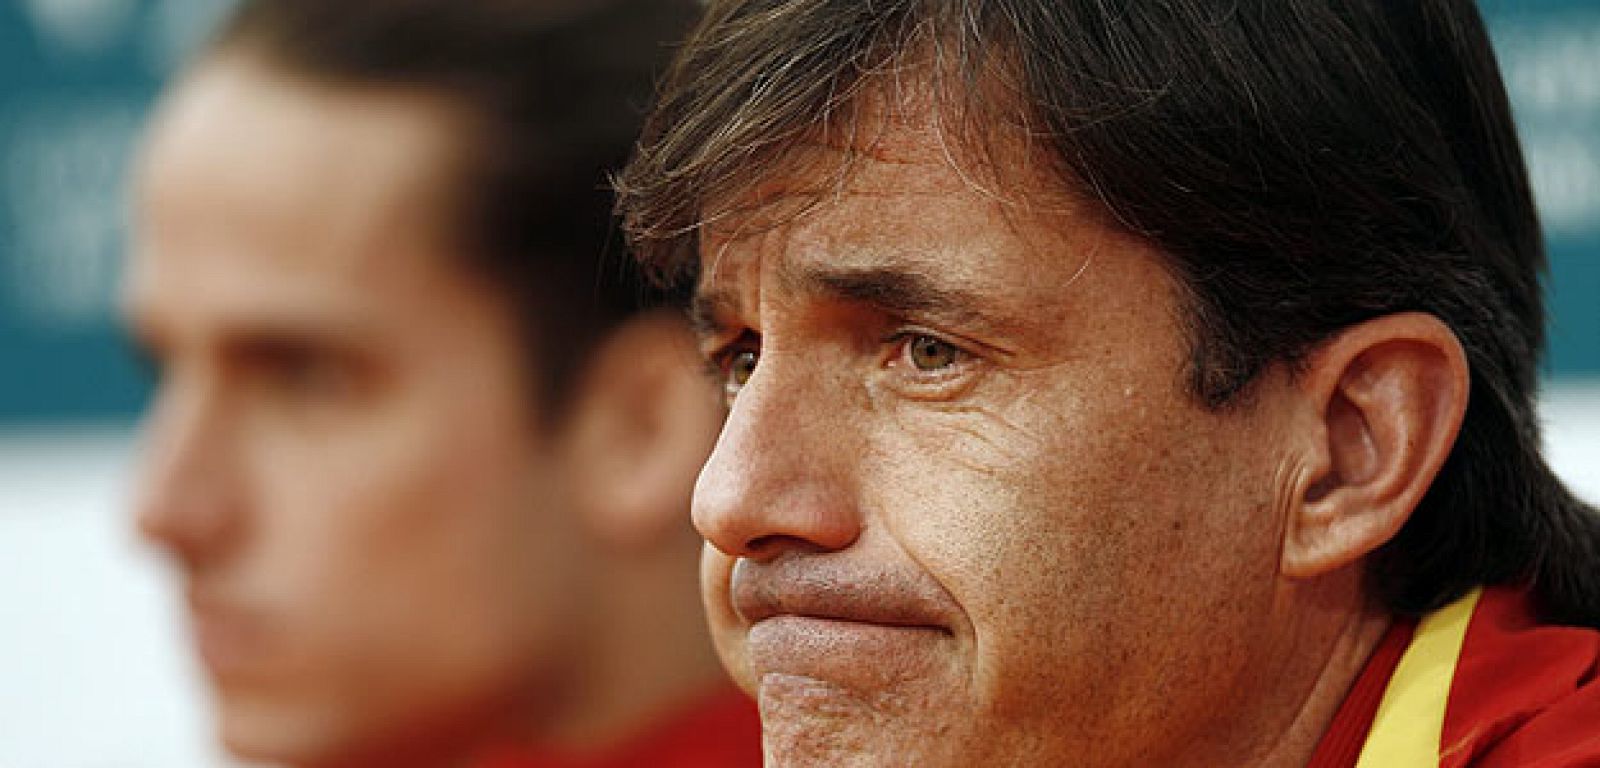 El capitán del equipo de España, Emilio Sánchez Vicario, ha destacado que Feliciano es especial.